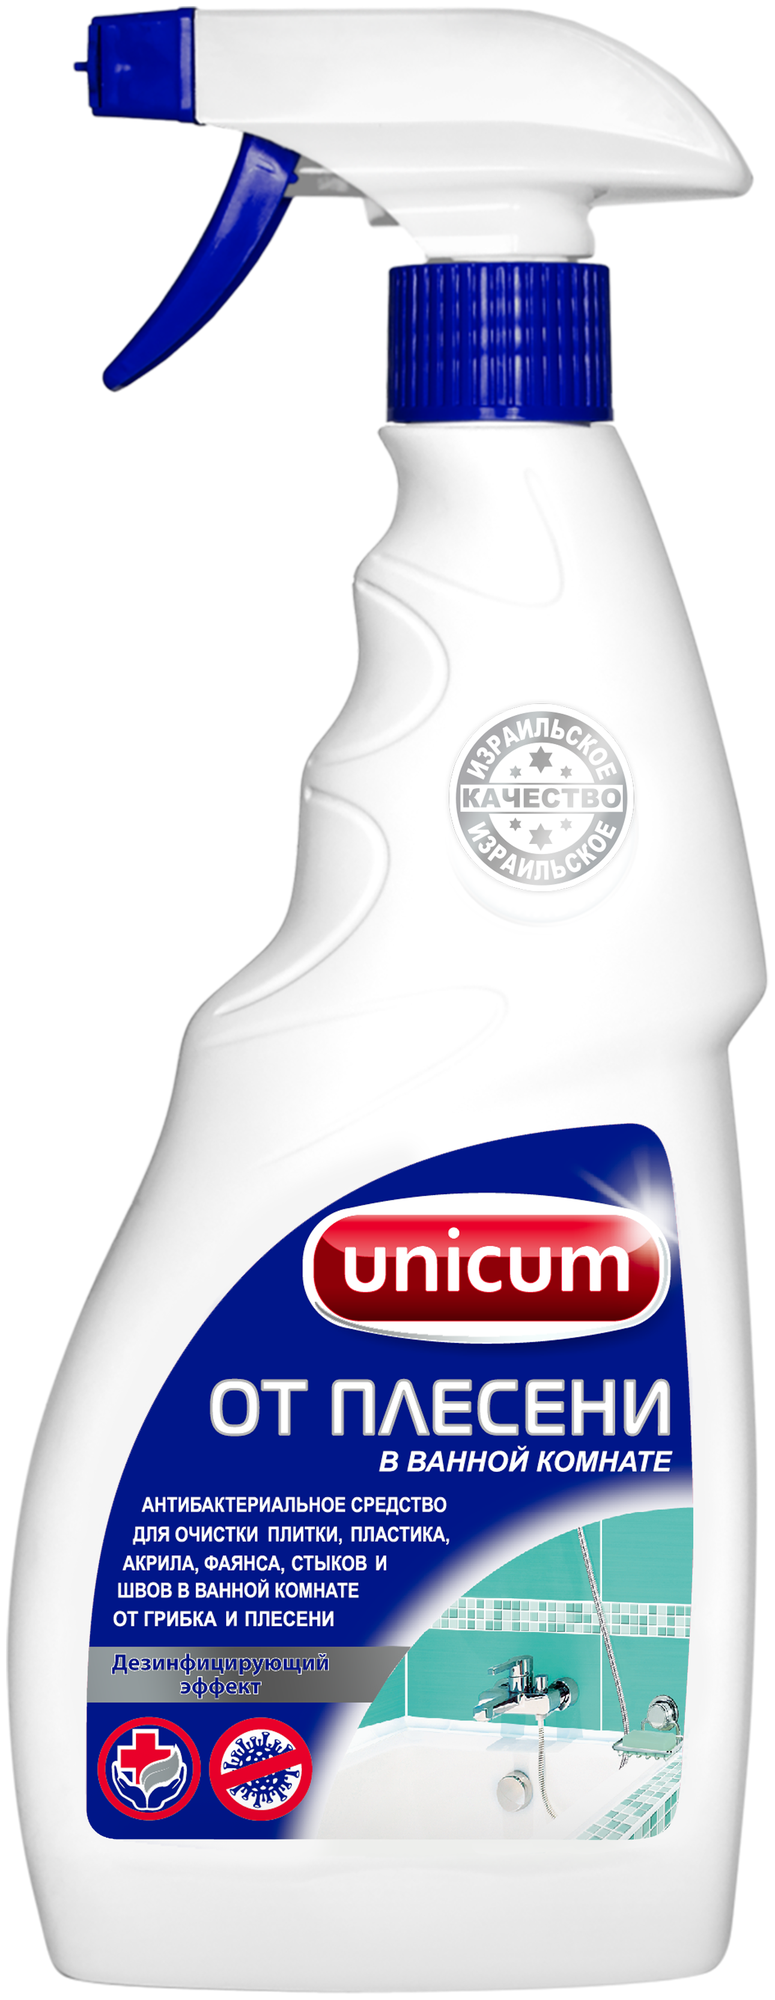 Средство Unicum для удаления плесени в ванной комнате спрей 500 мл - фото №1